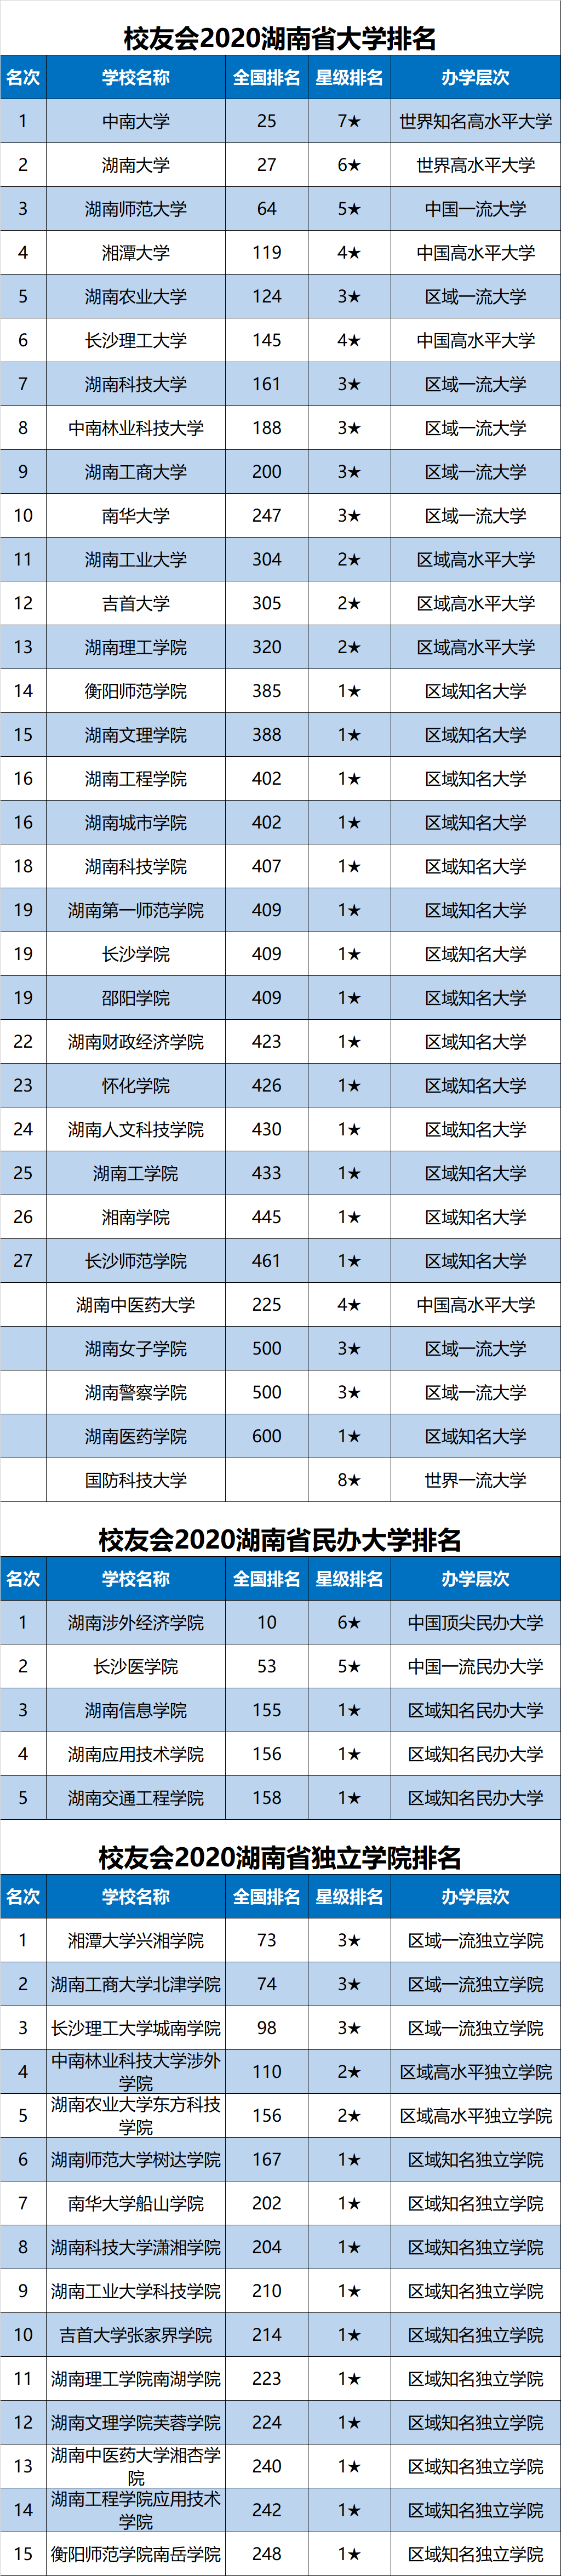 2020税收全国高校排名_2020年中国大学生均学校收入排名首次公布!深圳哪所